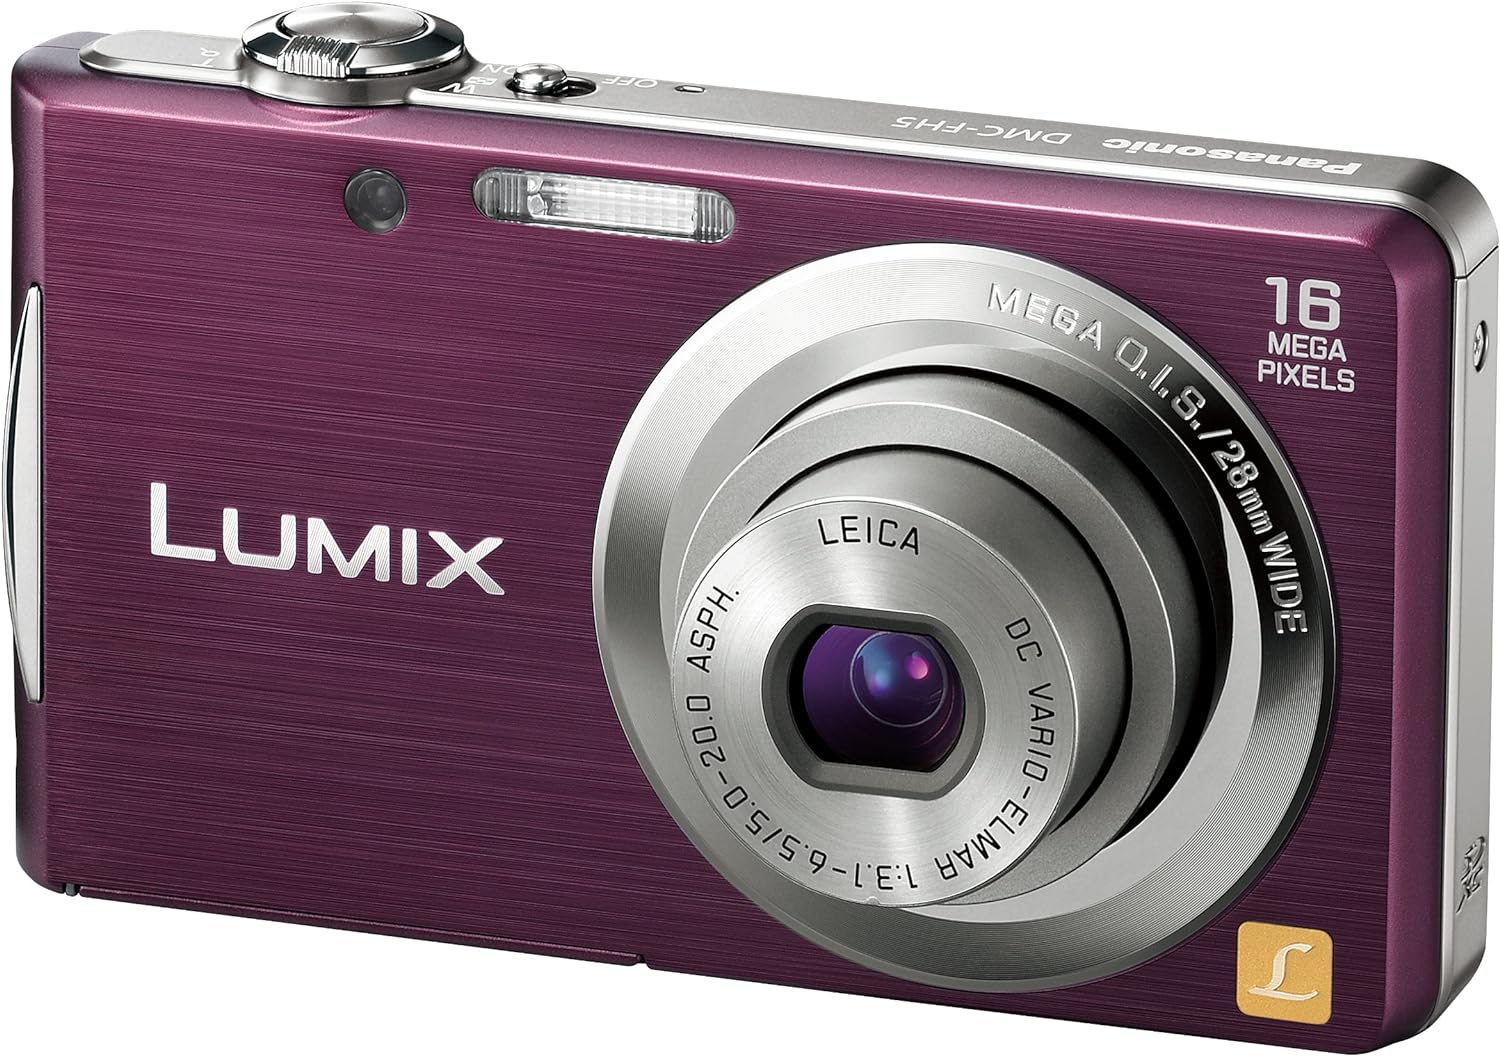 【中古】パナソニック デジタルカメラ LUMIX FH5 バイオレット DMC-FH5-V